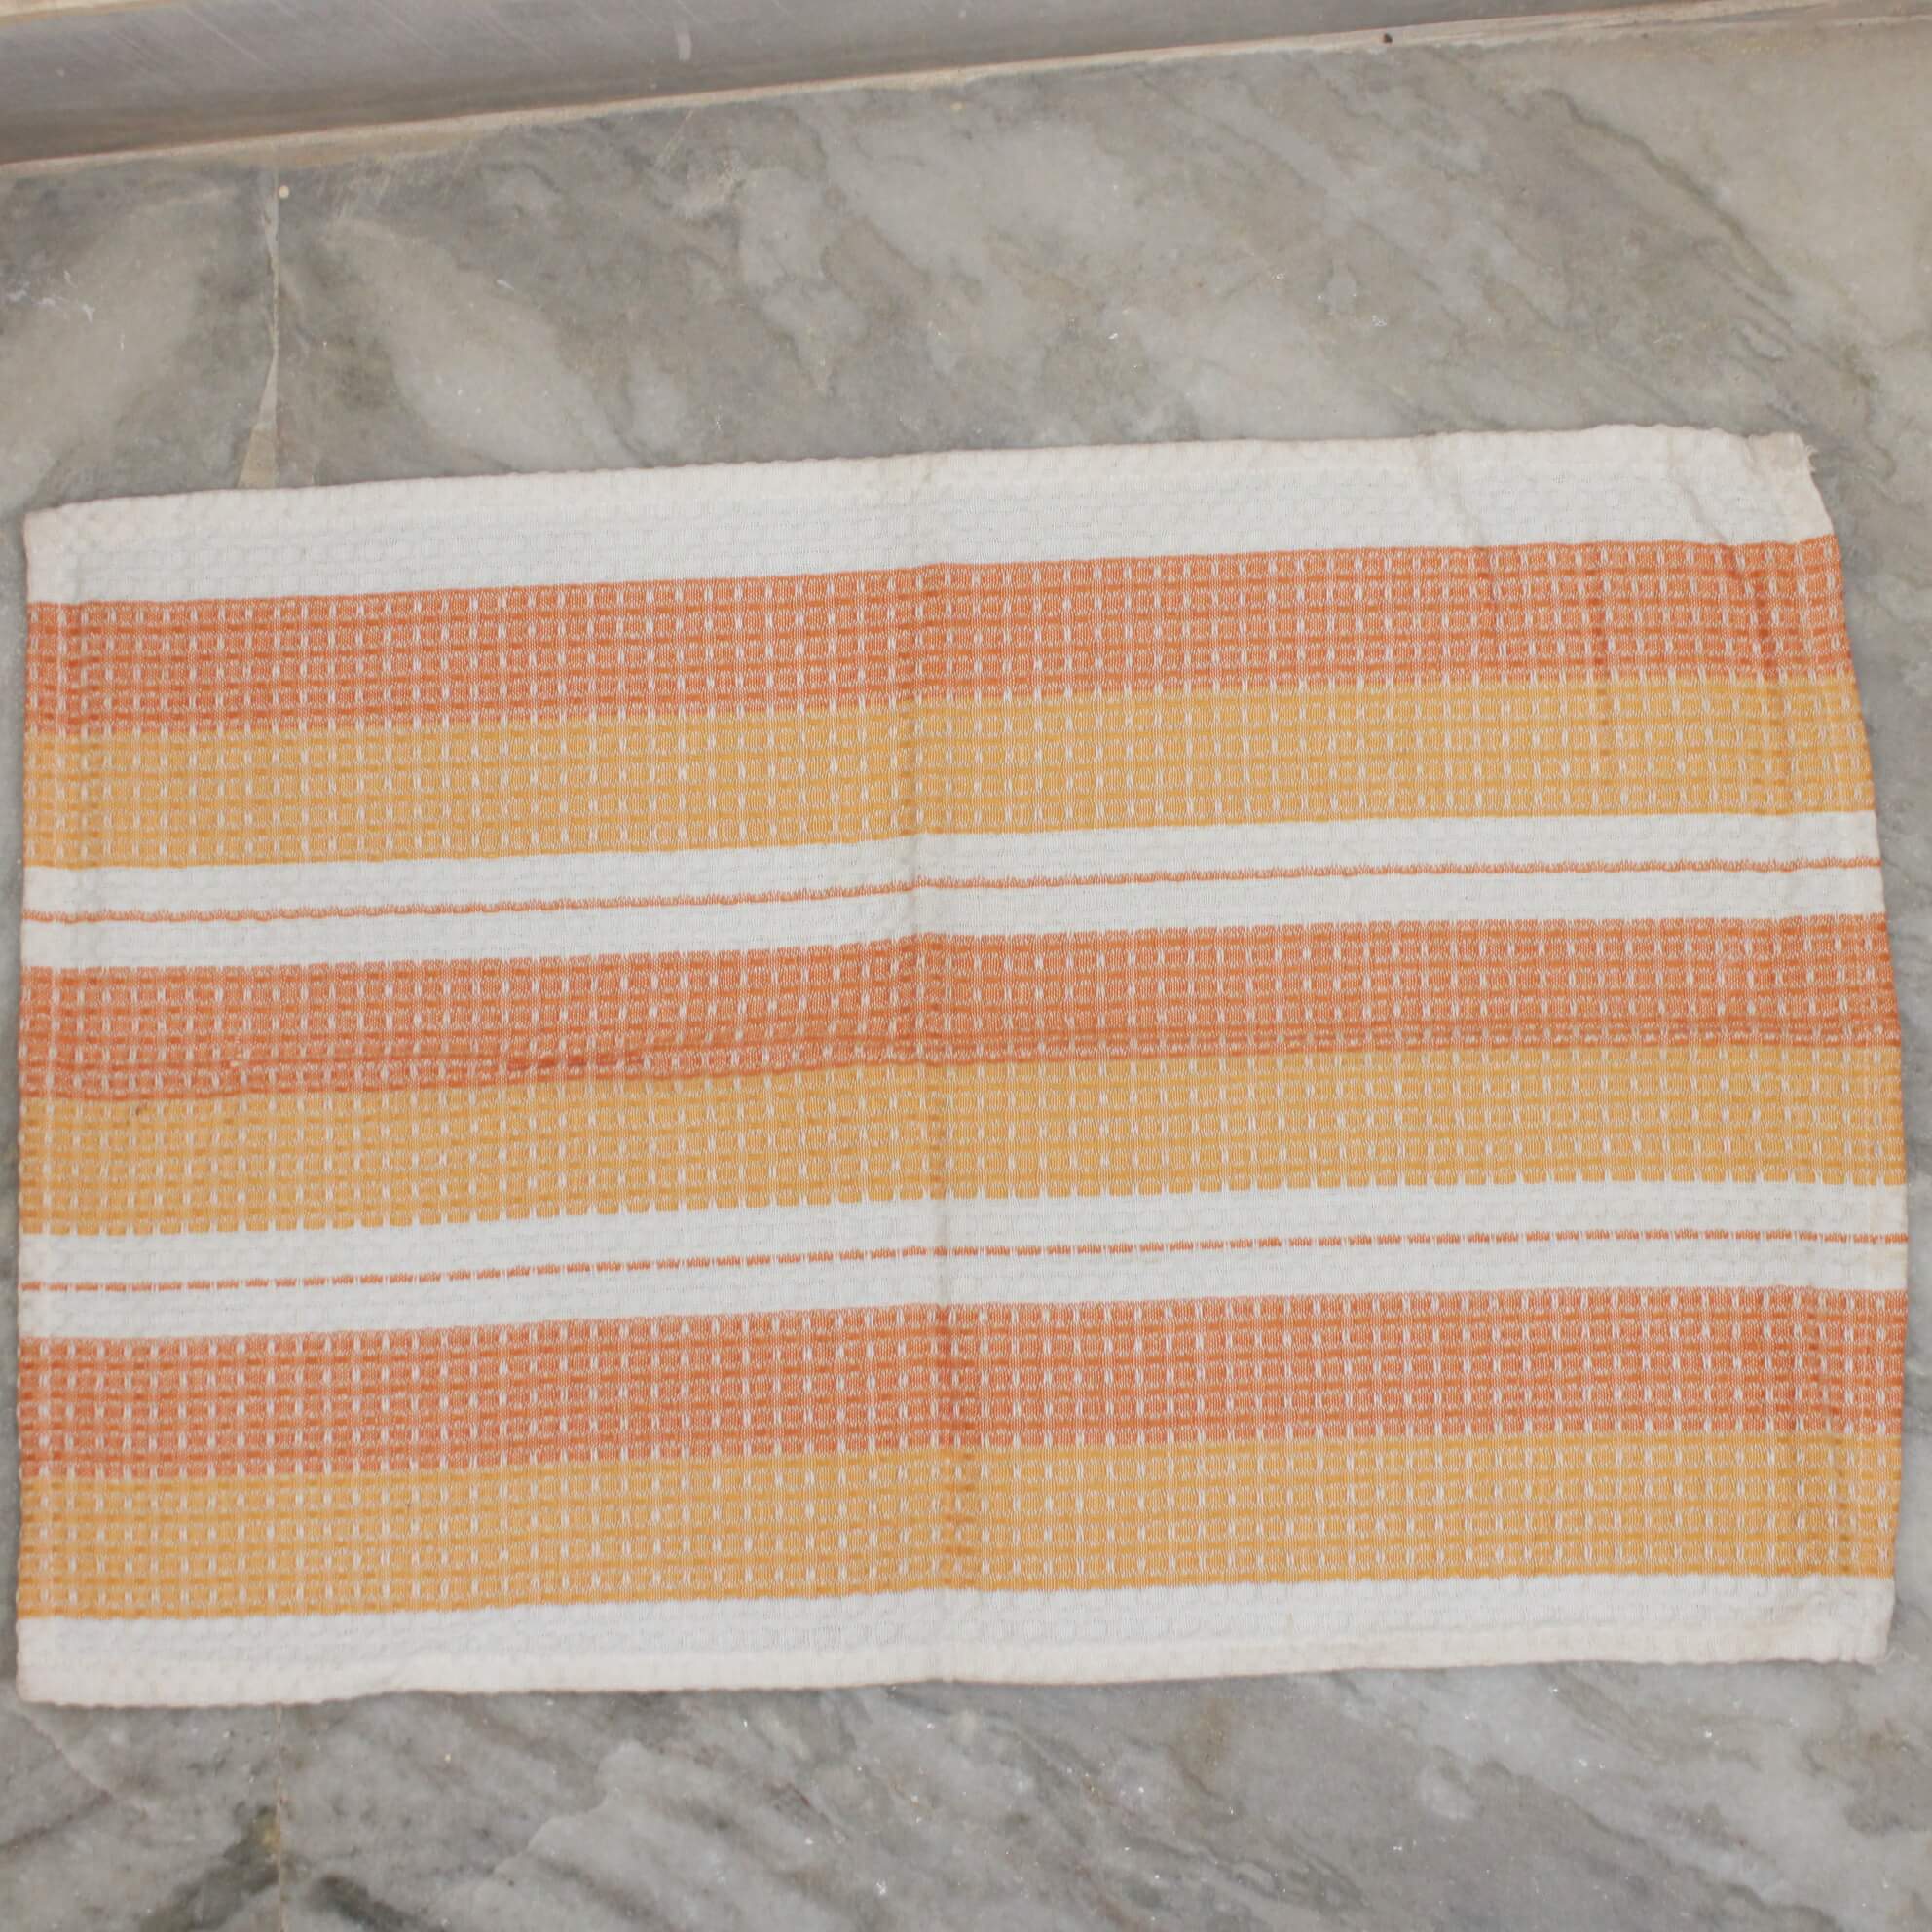 Towel 17(Main Image)